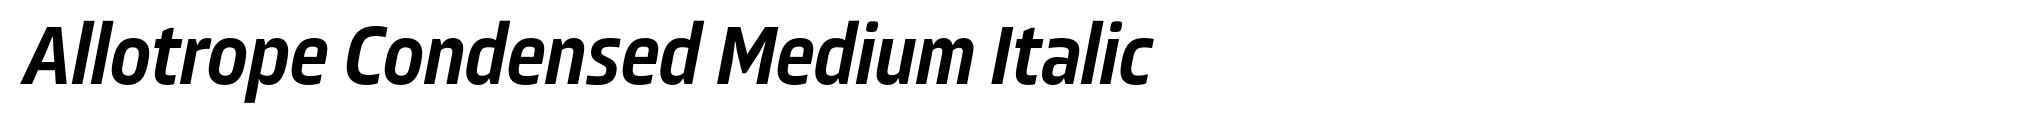 Allotrope Condensed Medium Italic image